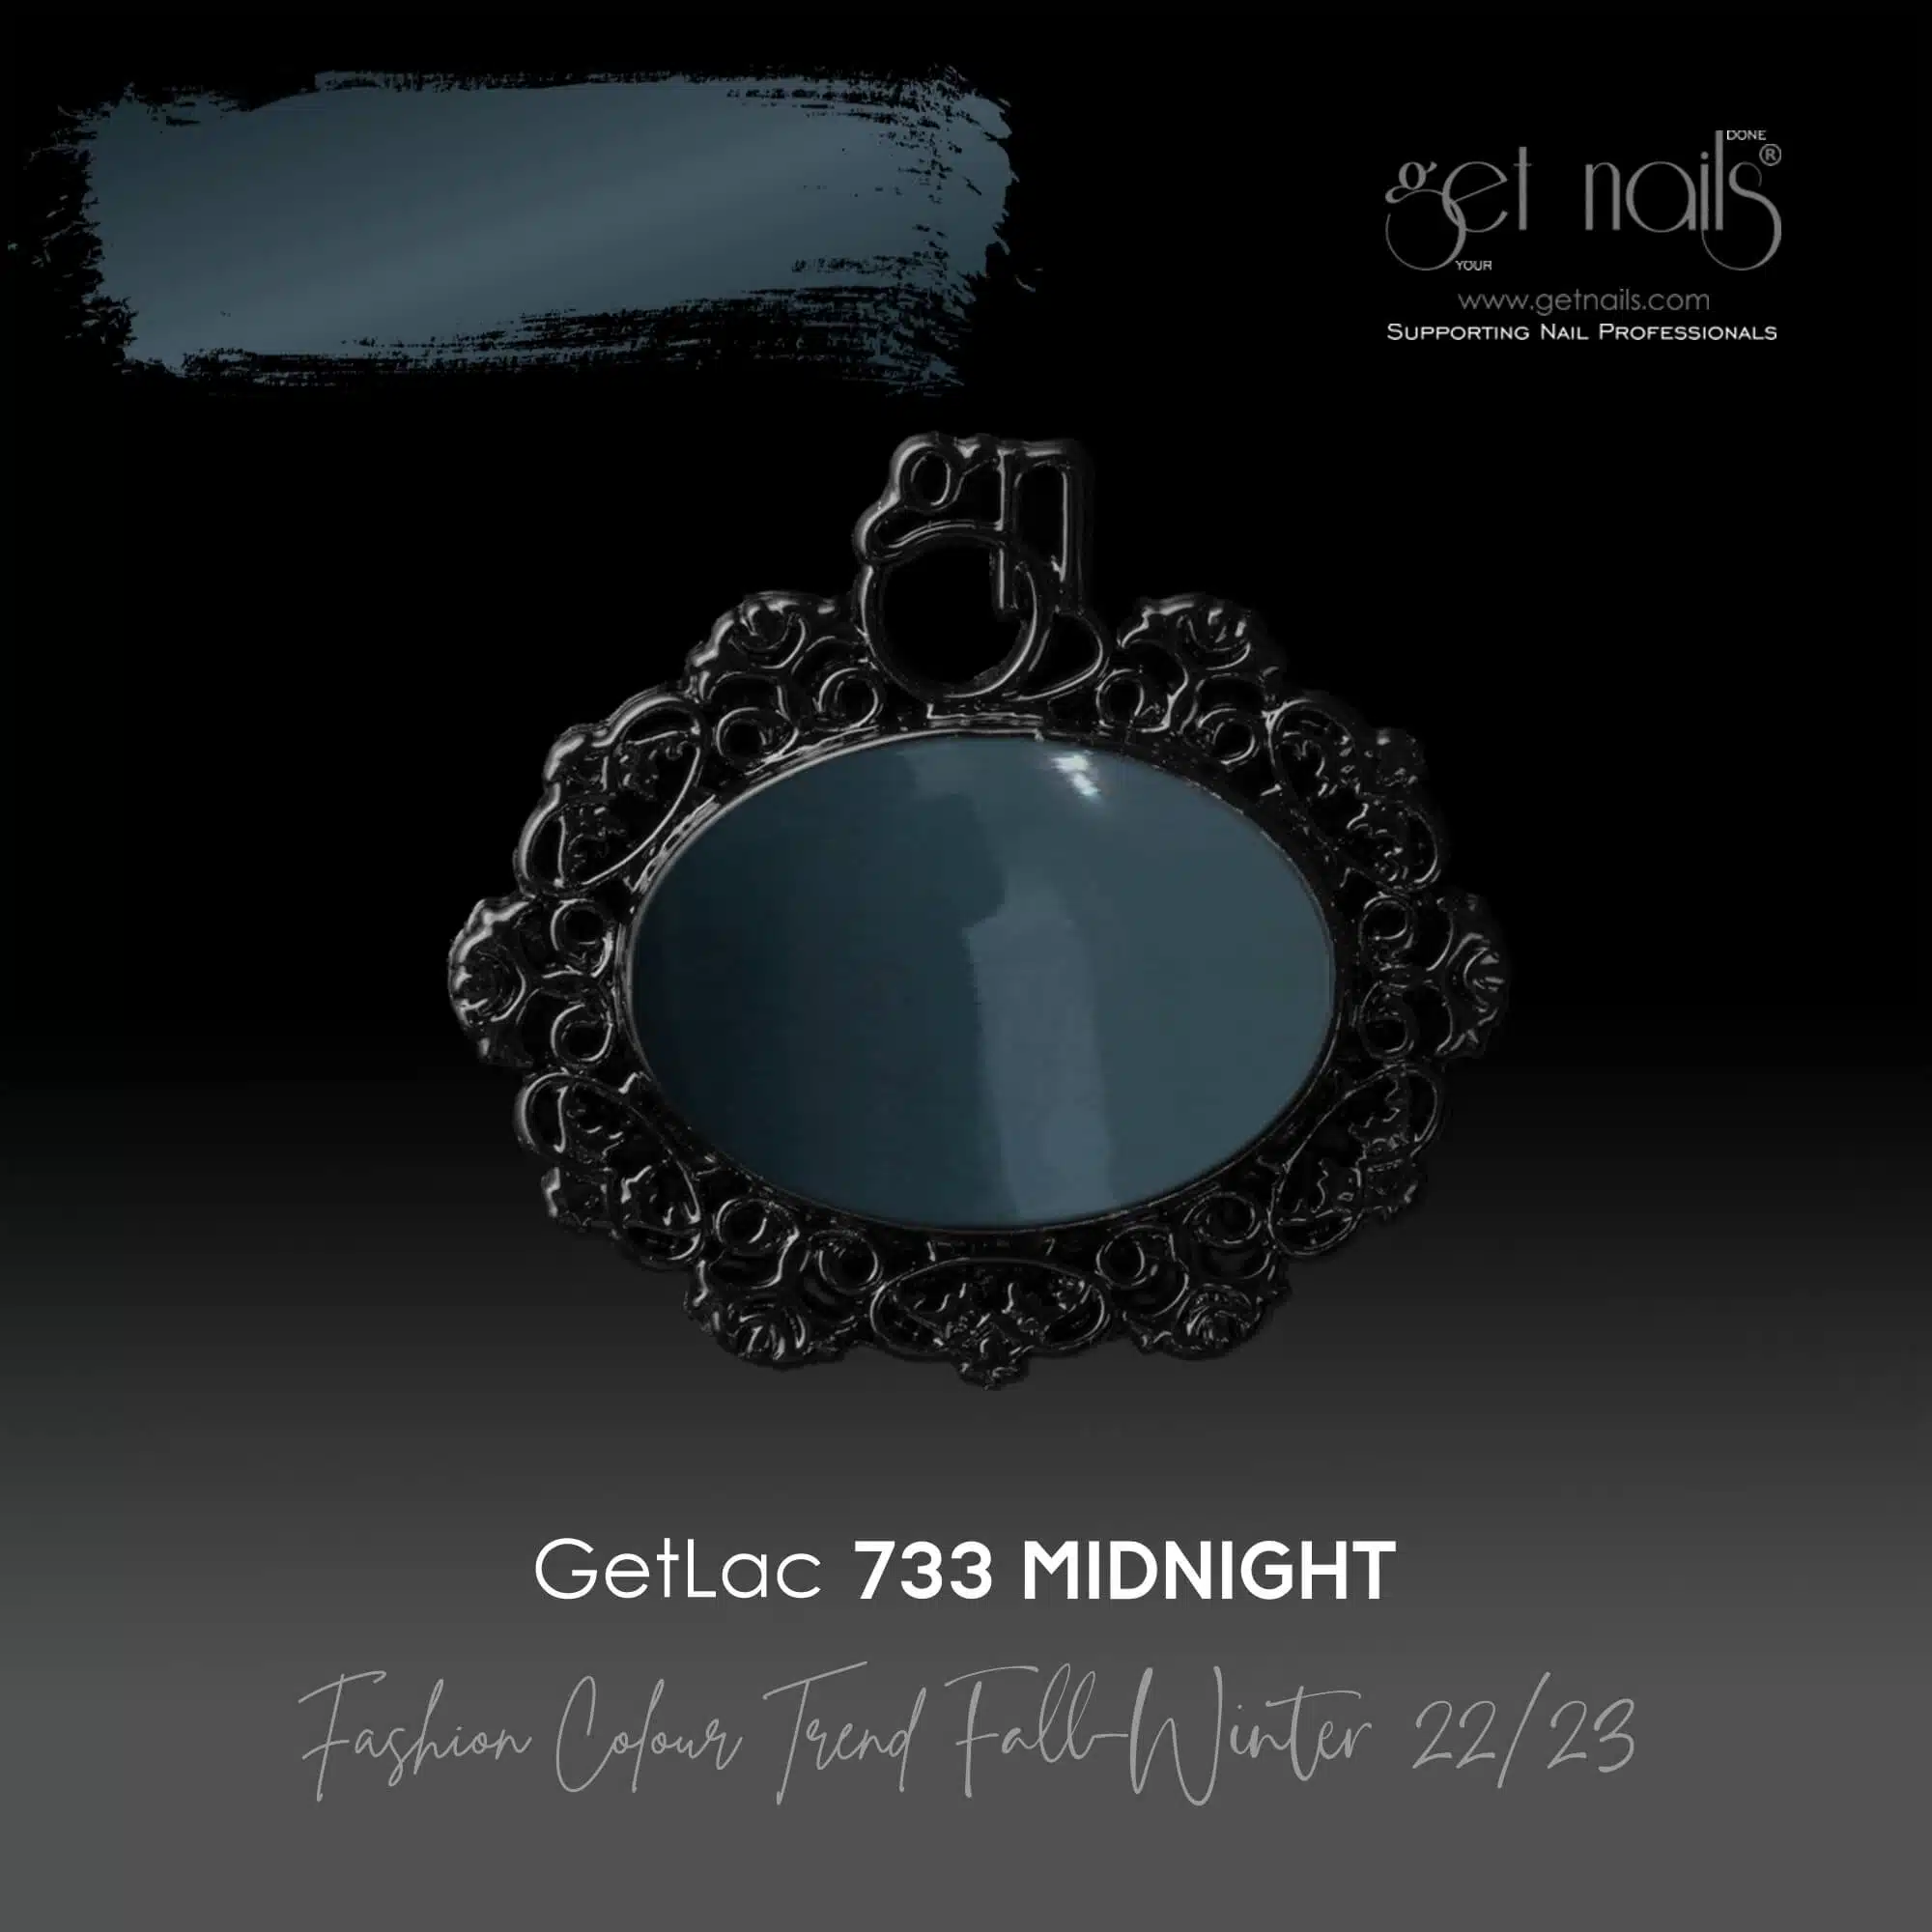 Get Nails Austria - GetLac 733 Mezzanotte 15g